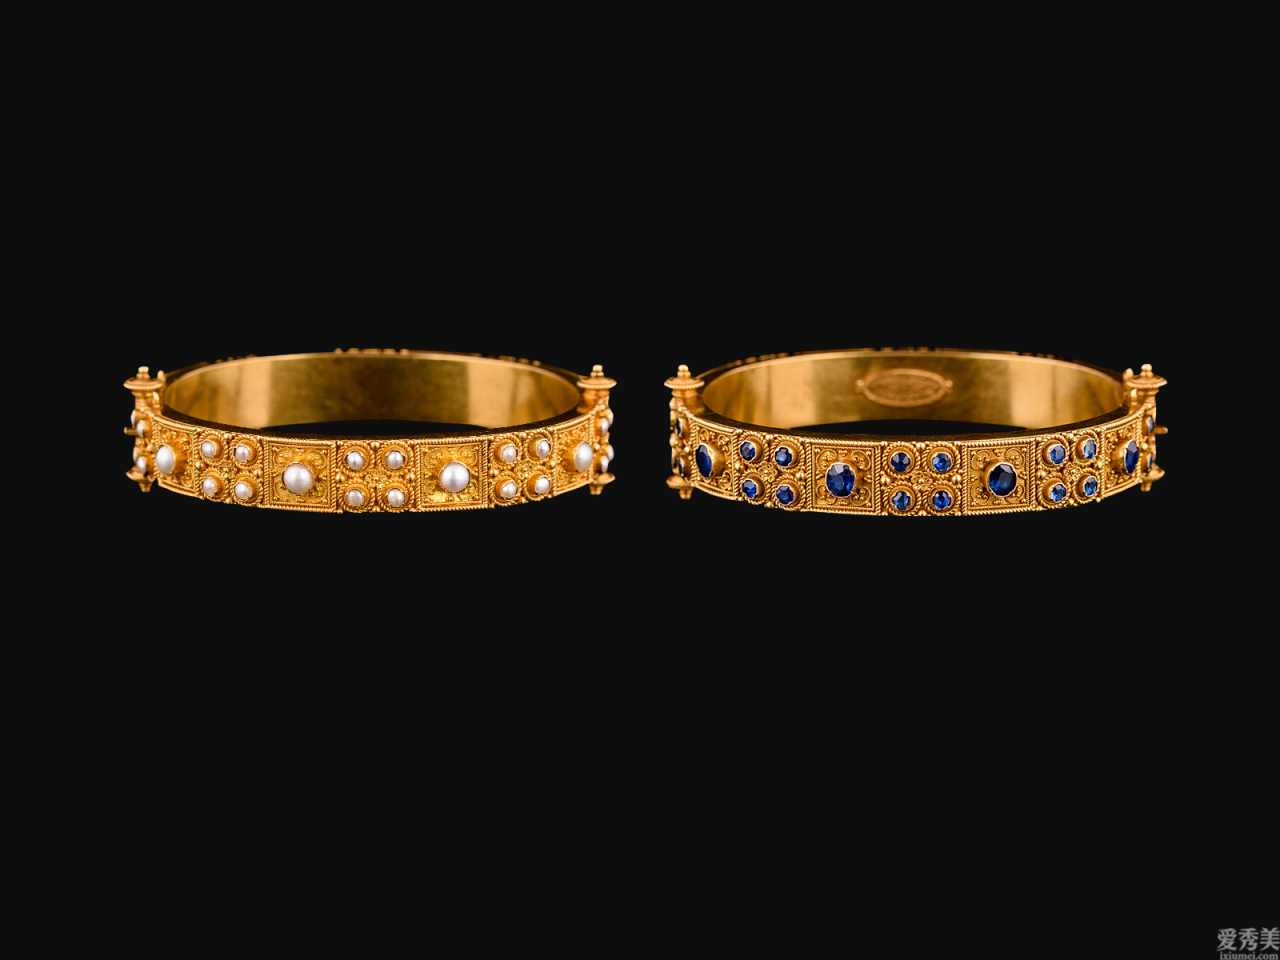 歐洲宮廷珠寶系列產品之「五」覺醒